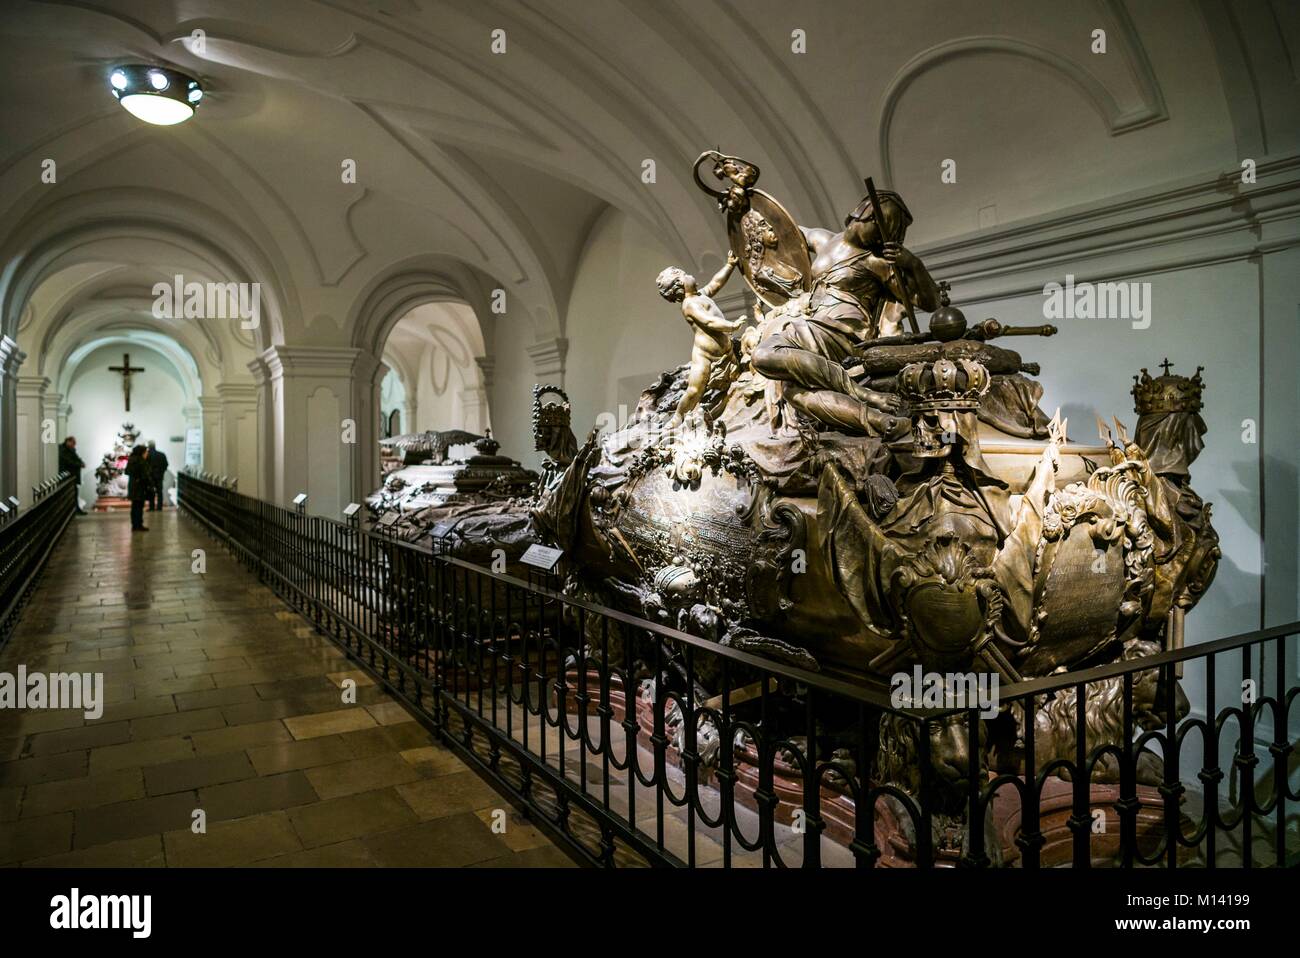 L'Autriche, Vienne, Kaisergruft sépulture impériale, Vault, lieu de repos de la famille royale des Habsbourg, une crypte du roi Charles VI Banque D'Images